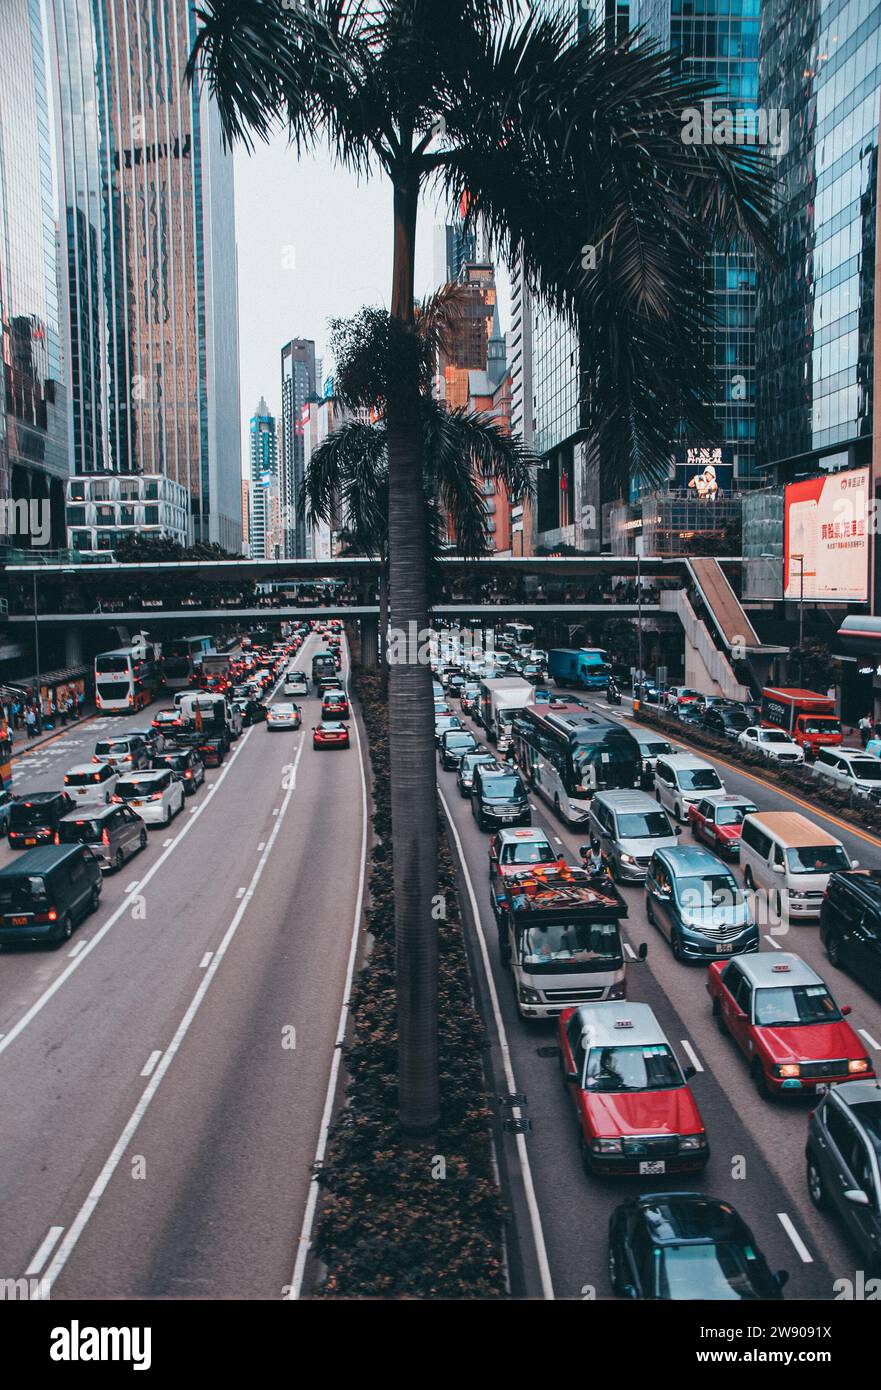 Streets of Hong Kong Stock Photo